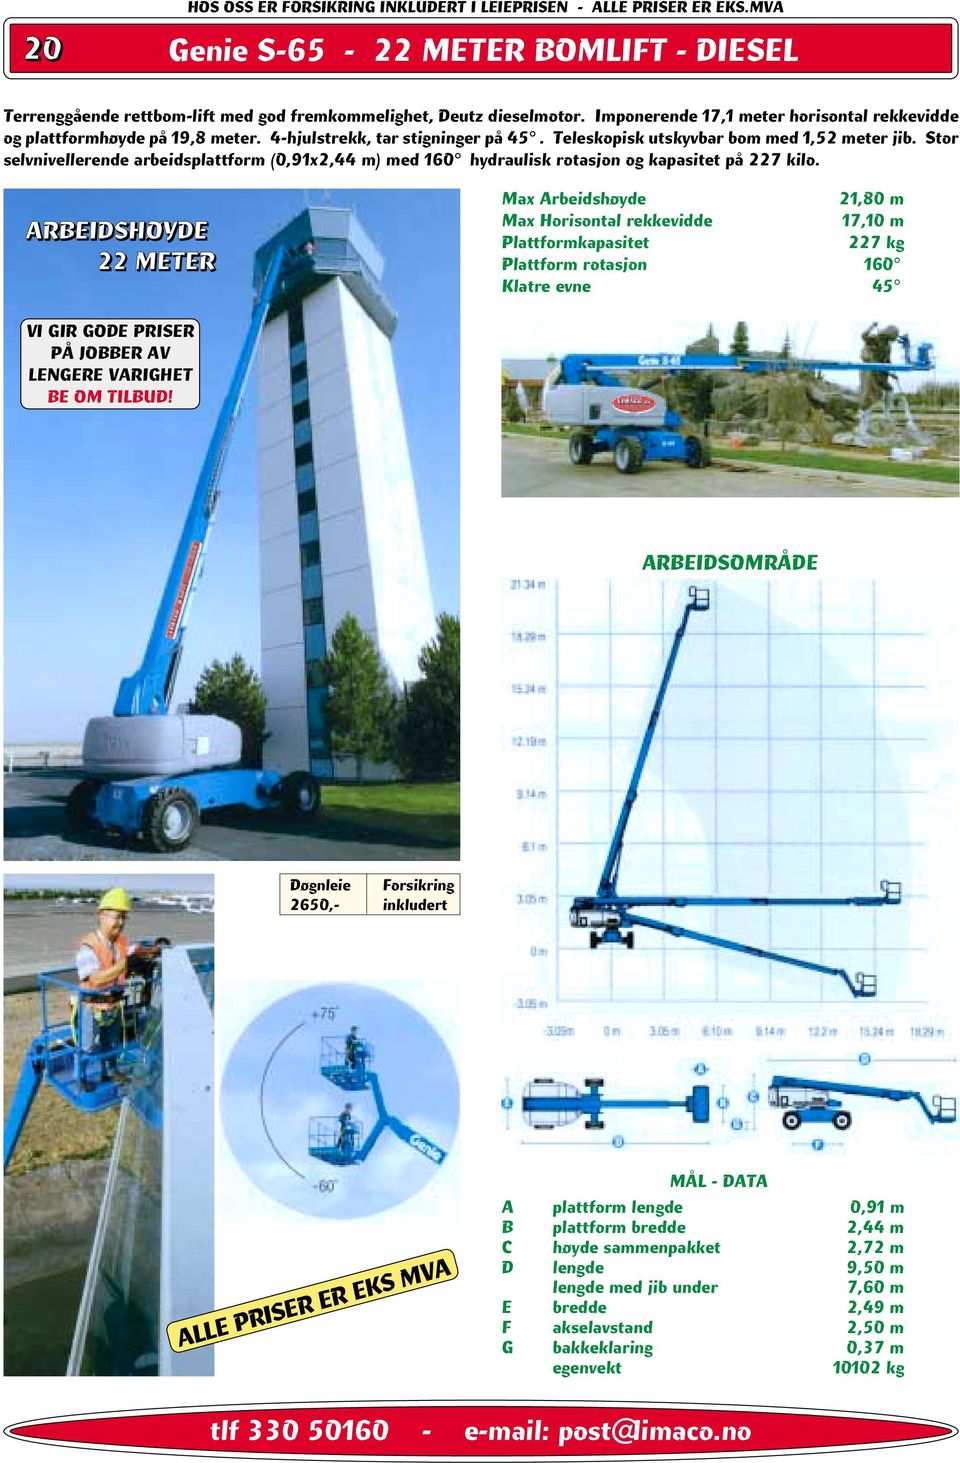 Stor selvnivellerende arbeidsplattform (0,91x2,44 m) med 160 hydraulisk rotasjon og kapasitet på 227 kilo.